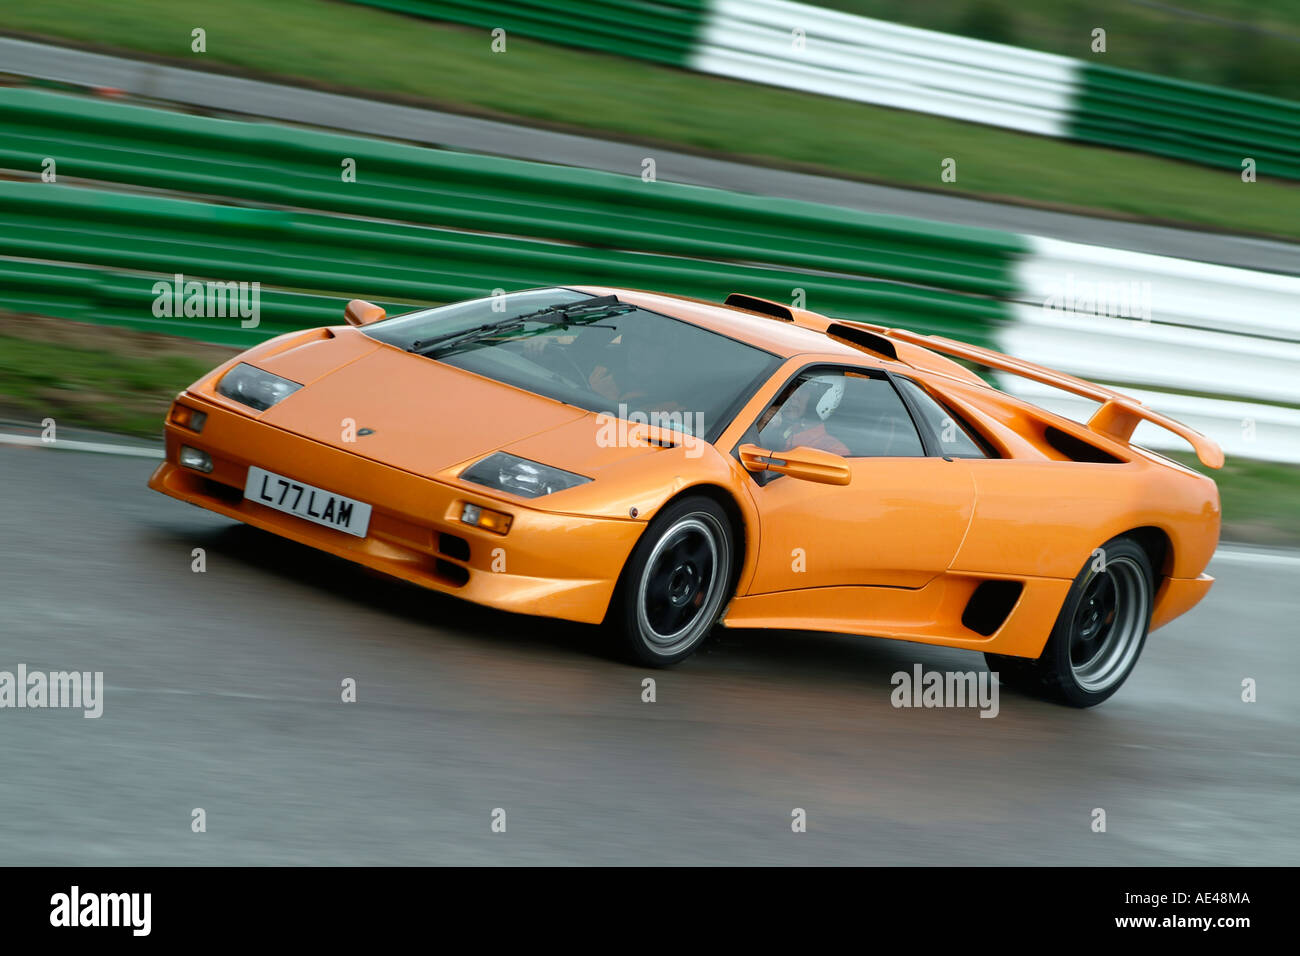 Orange Lamborghini Murcielago Italienische Sportwagen-Rennen auf einer Rennstrecke in Großbritannien. Stockfoto